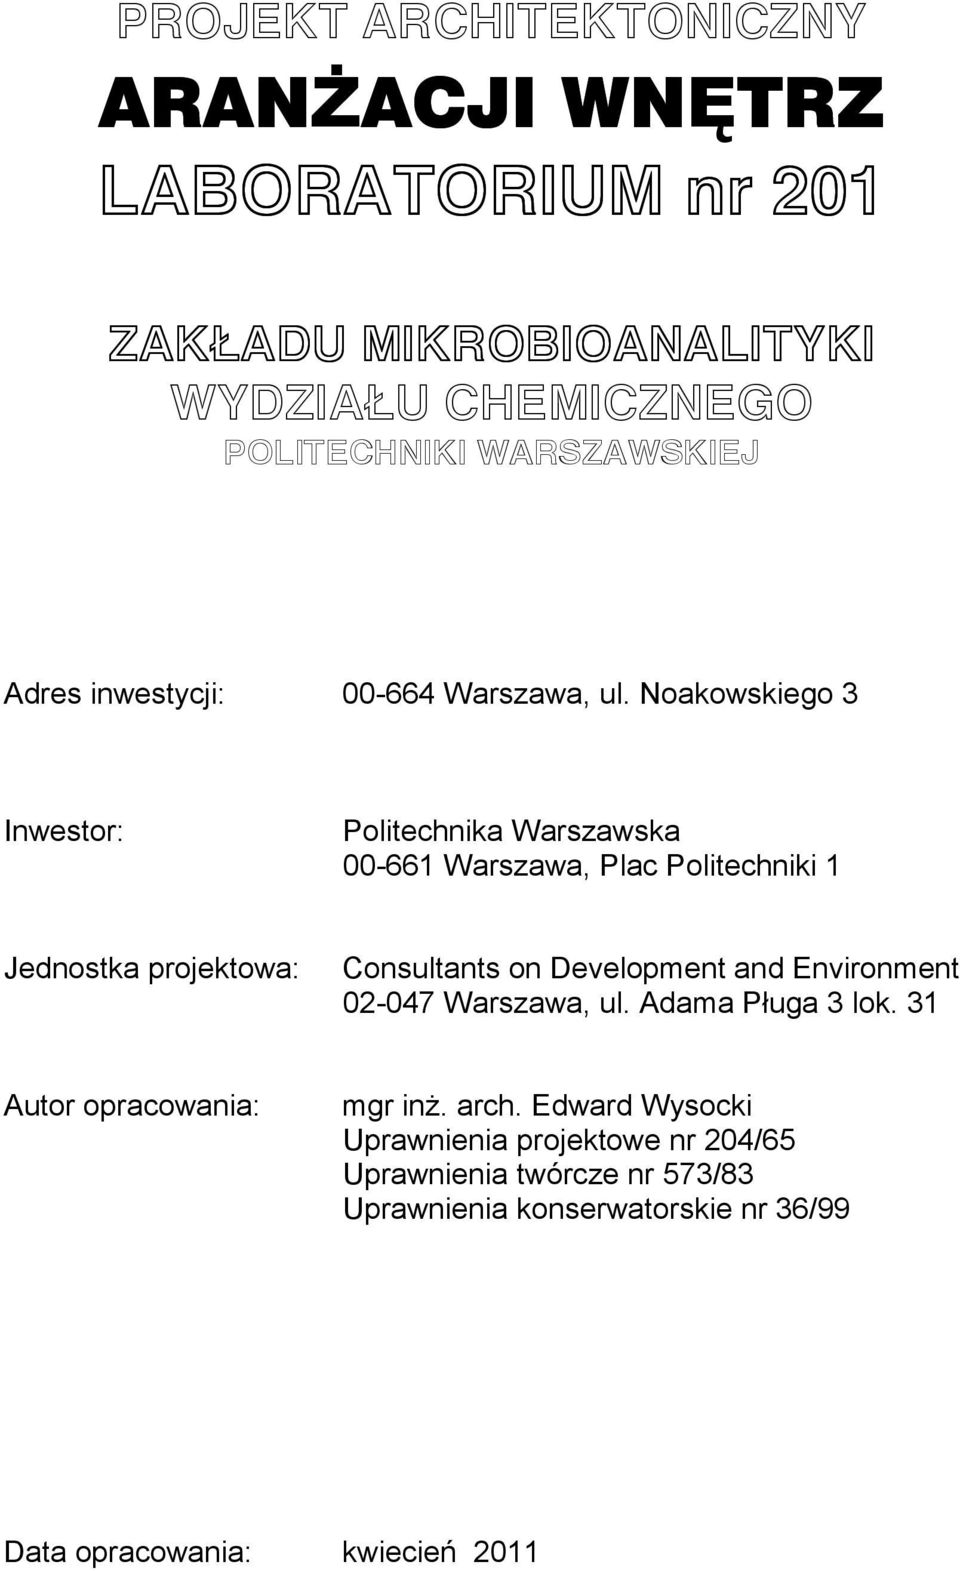 Noakowskiego 3 Inwestor: Politechnika Warszawska 00-661 Warszawa, Plac Politechniki 1 Jednostka projektowa: Consultants on Development and